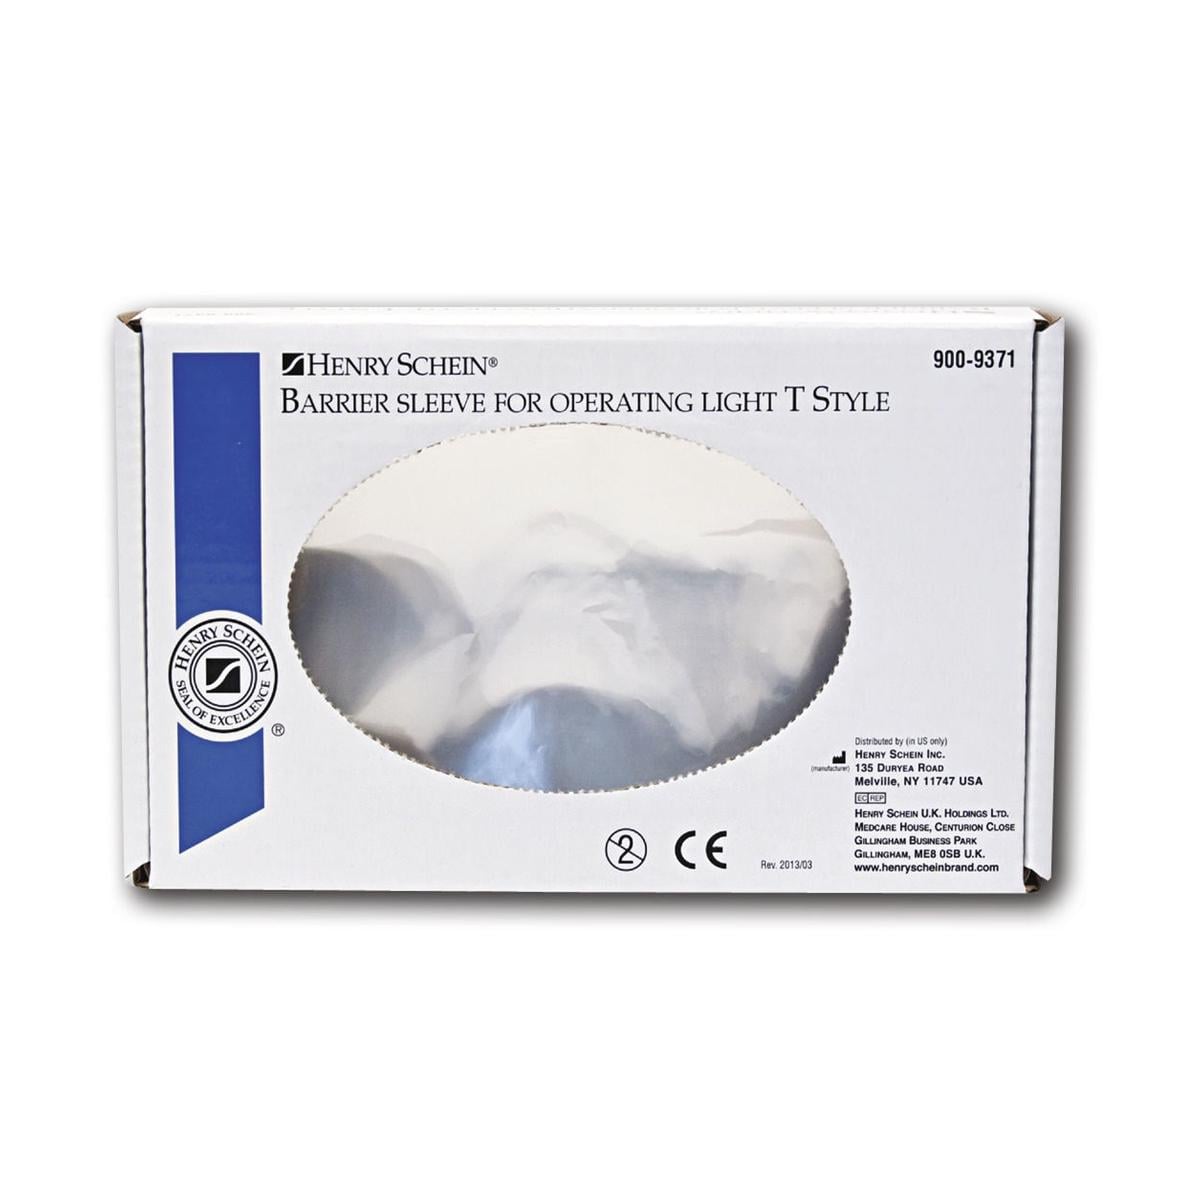 HS-Hygiene Abdeckungen - Für Lampengriffe (T-Style), 100 x 150 mm, Packung 500 Stück